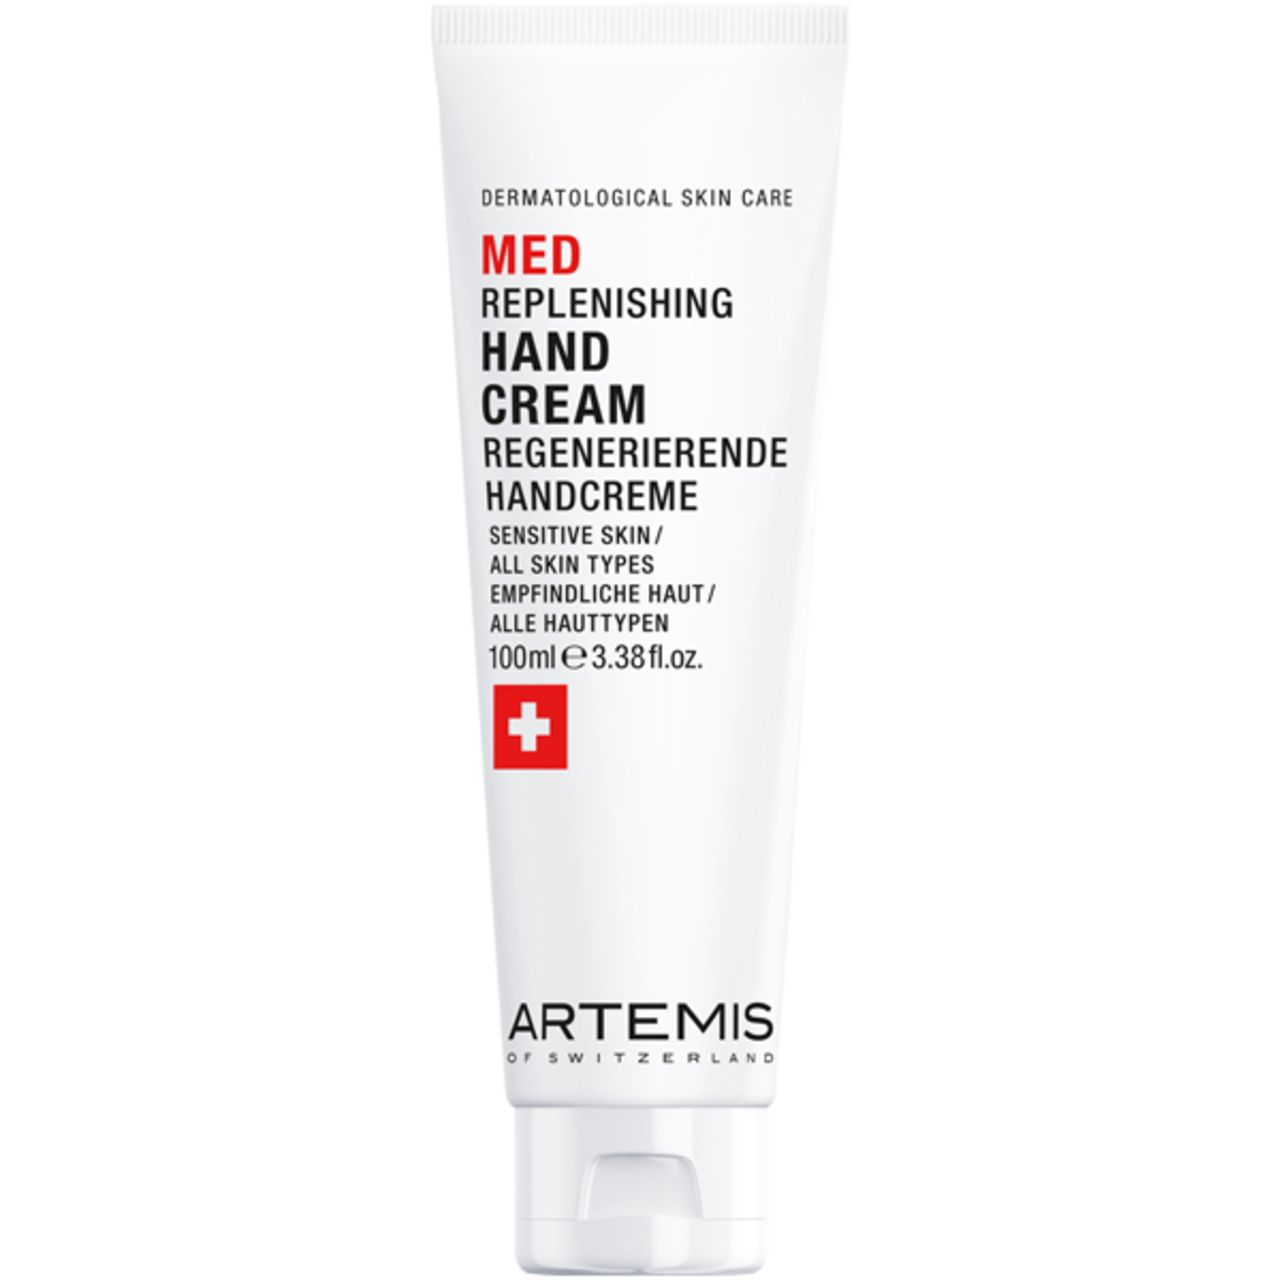 Artemis of Switzerland Med Replenishing Hand Cream